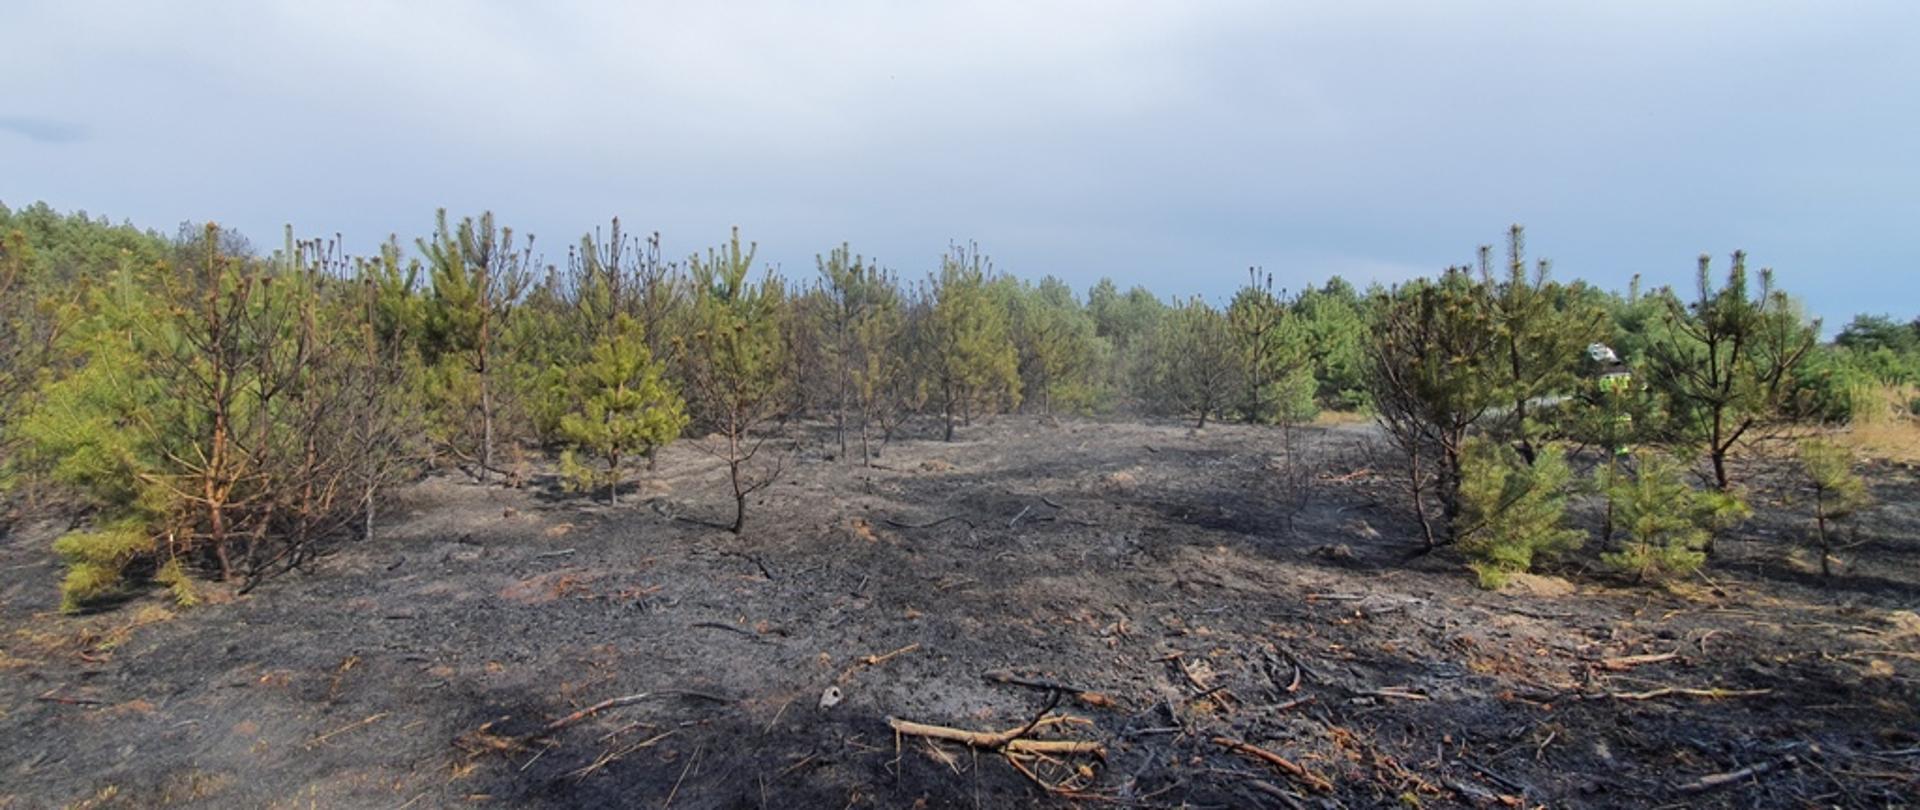 Zdjęcie przedstawia pogorzelisko poszycia leśnego oraz nadpalone pojedyncze drzewa